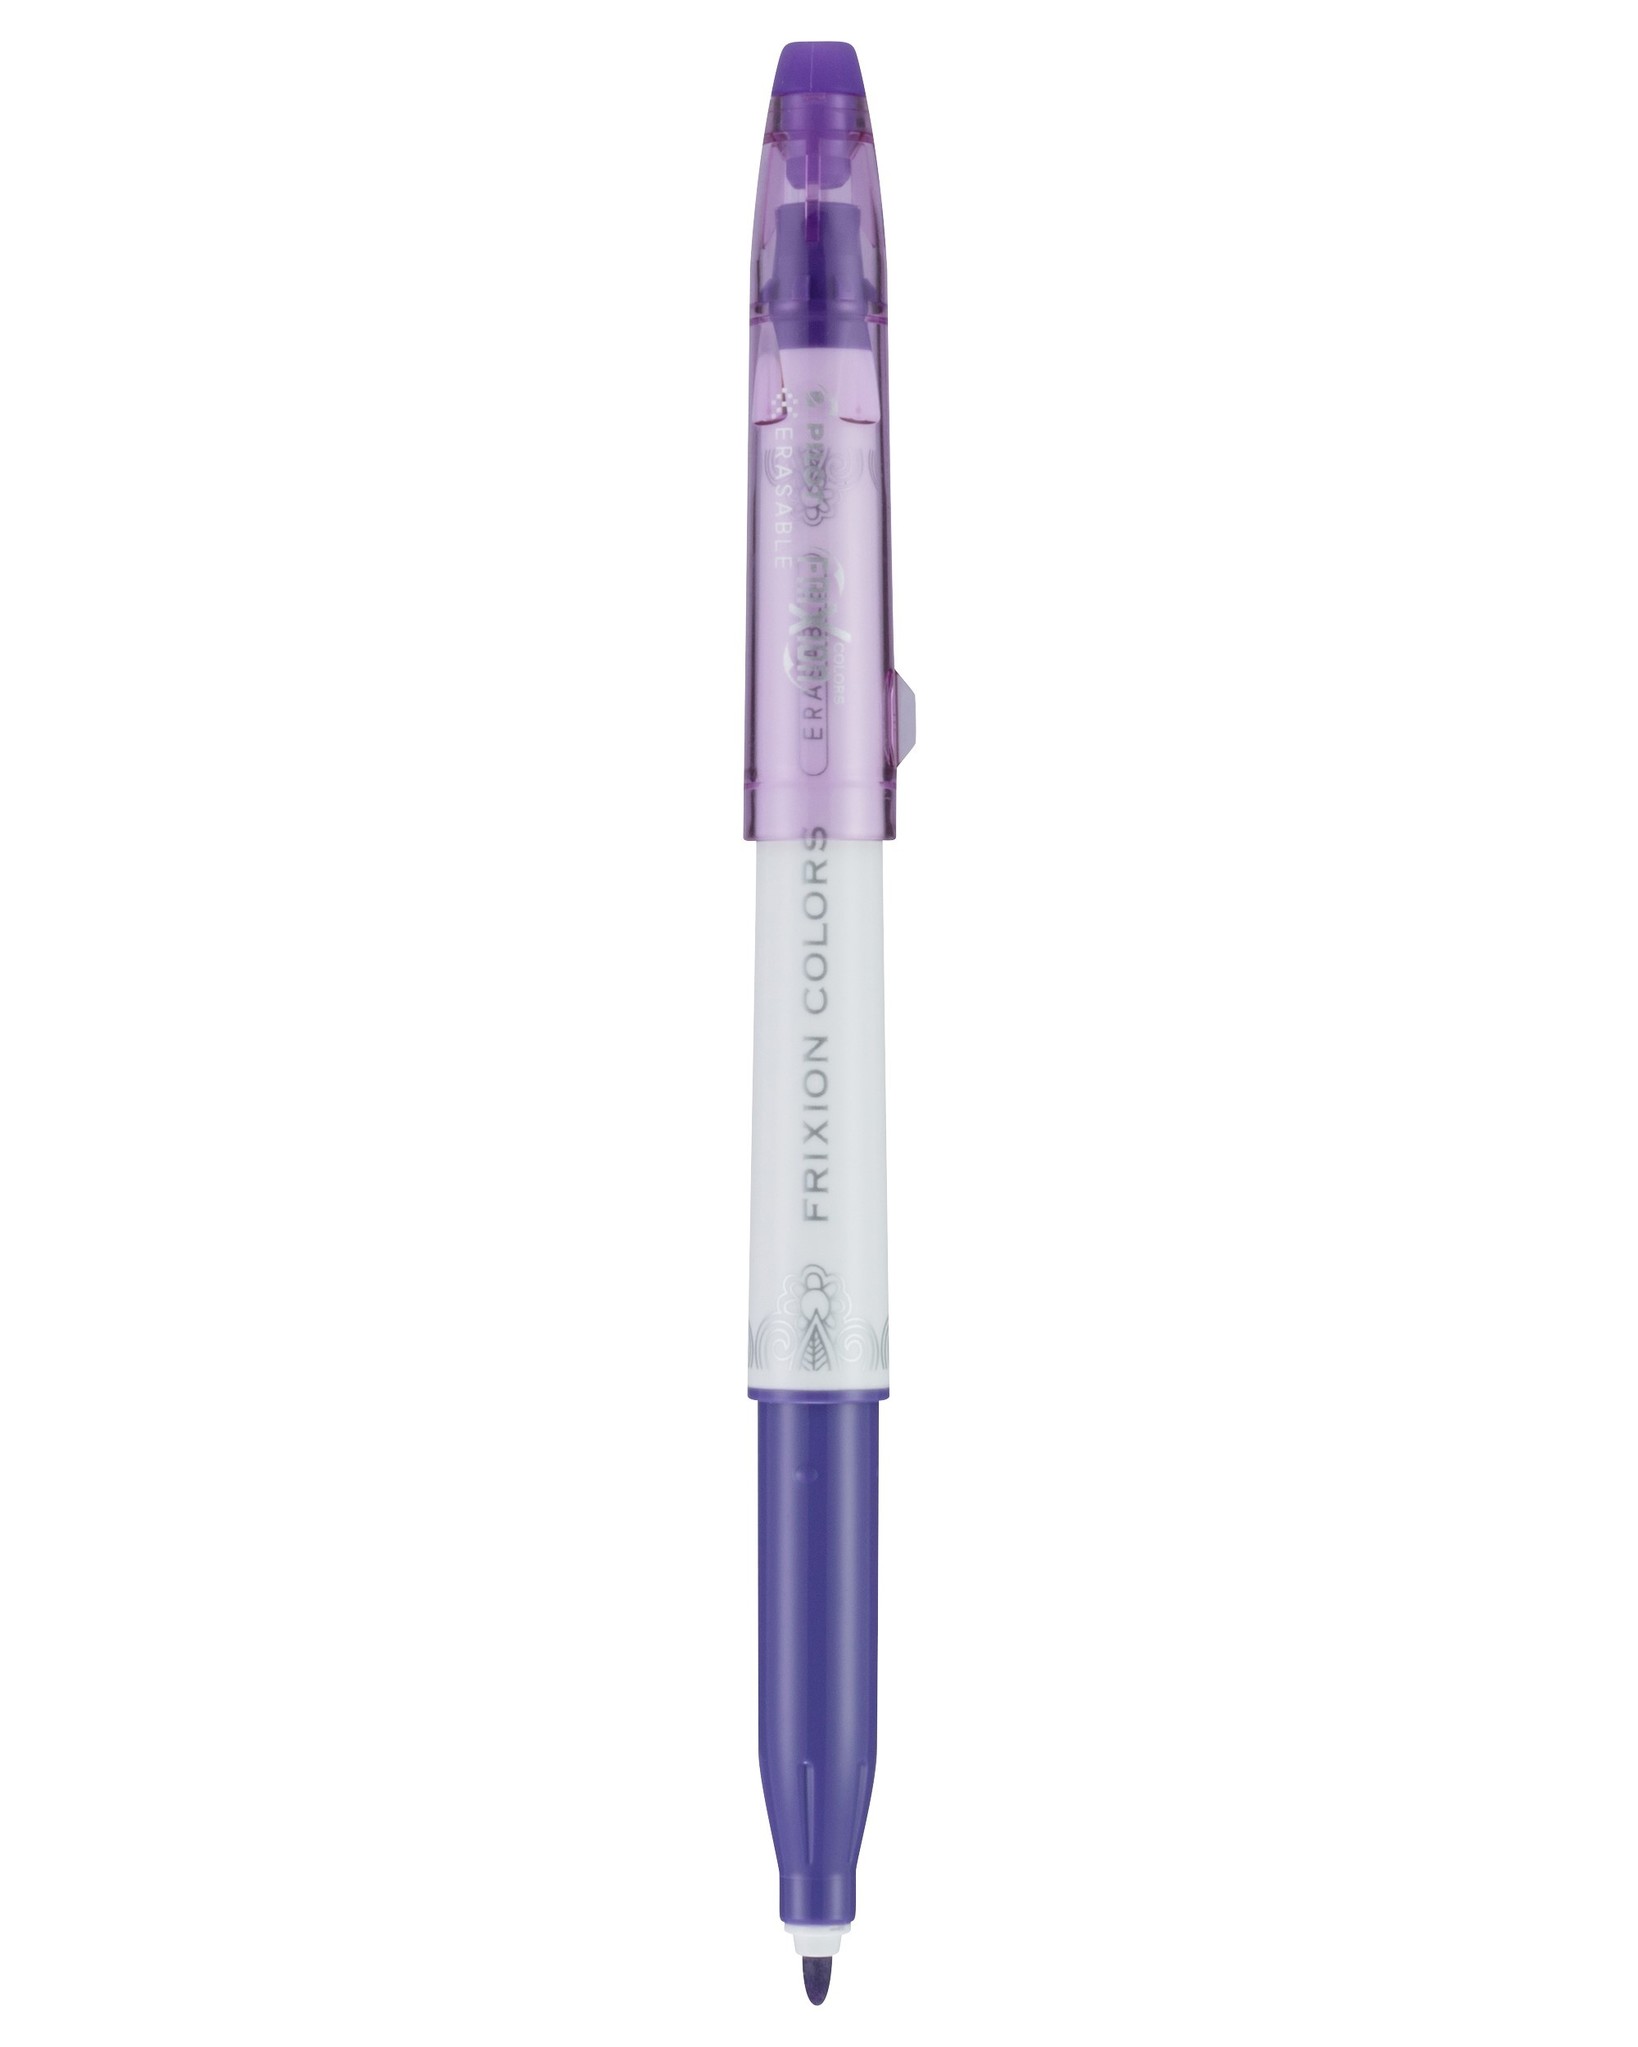 Pilot Frixion Colour Erasable Markers - Pilot Pens